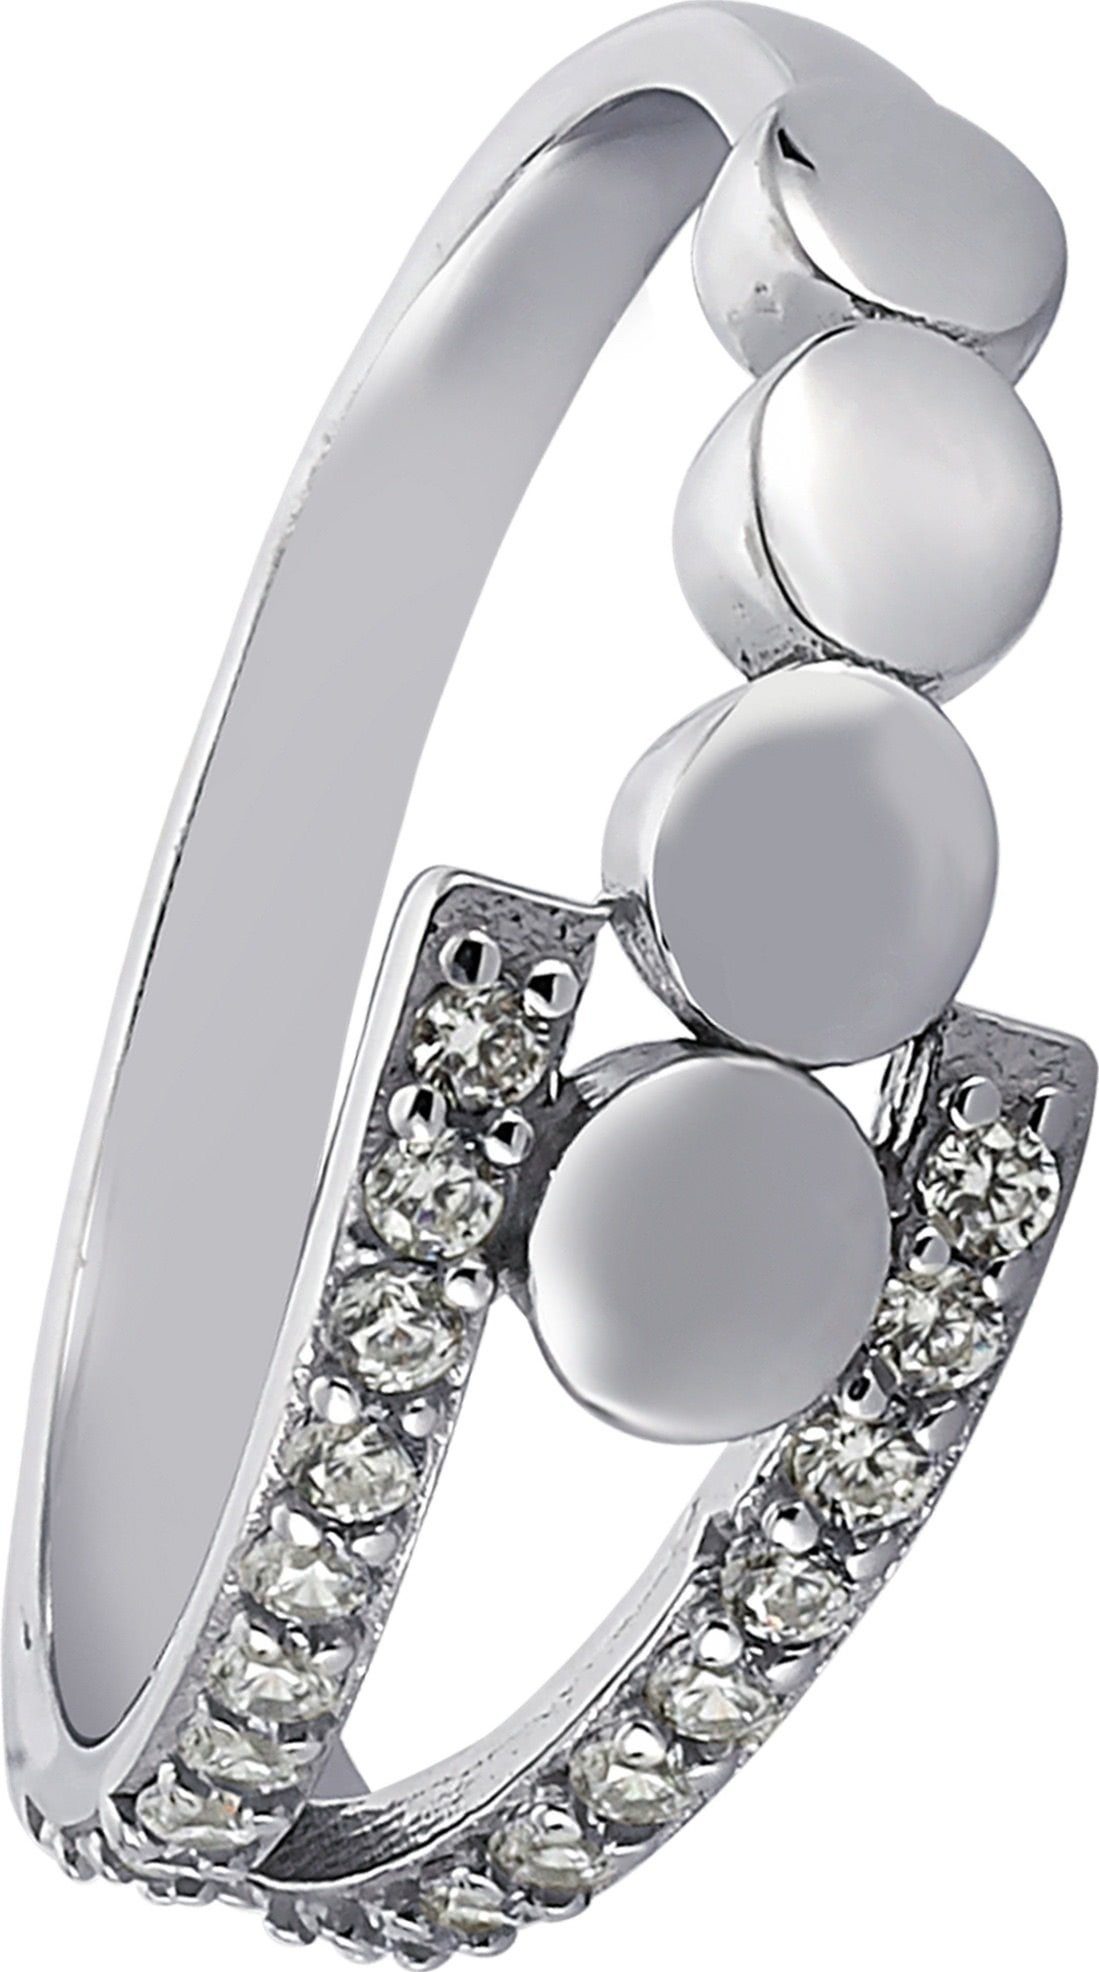 Silber 54 Sterling 925 Balia (17,2), Ring Ring für Balia mit Zirkonia weißen Silberring Damen (Fingerring), Damen Kreise,